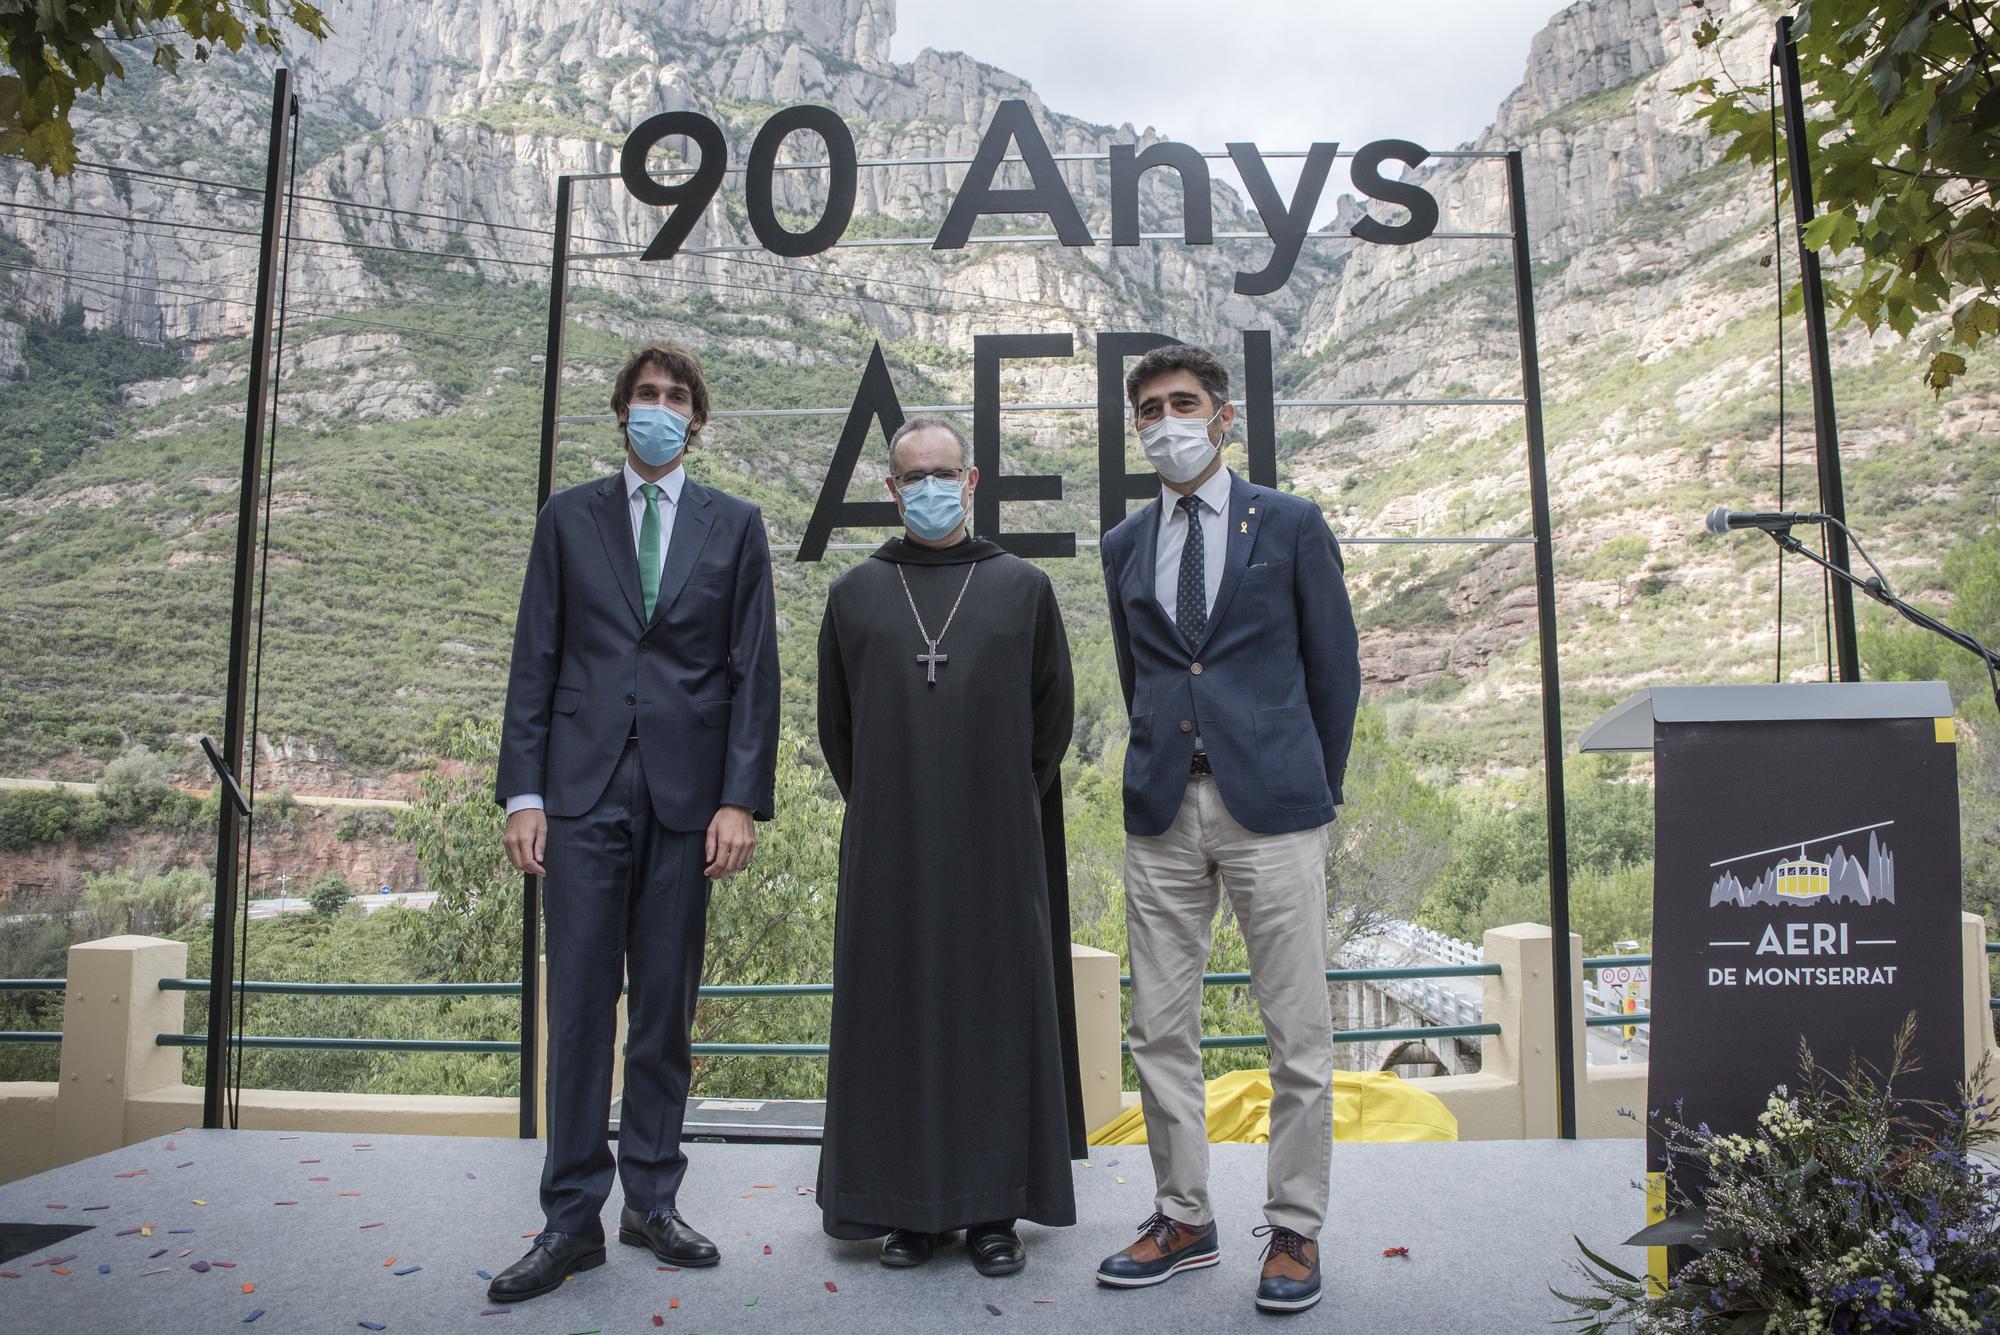 L'aeri de Montserrat celebra els seus 90 anys de vida